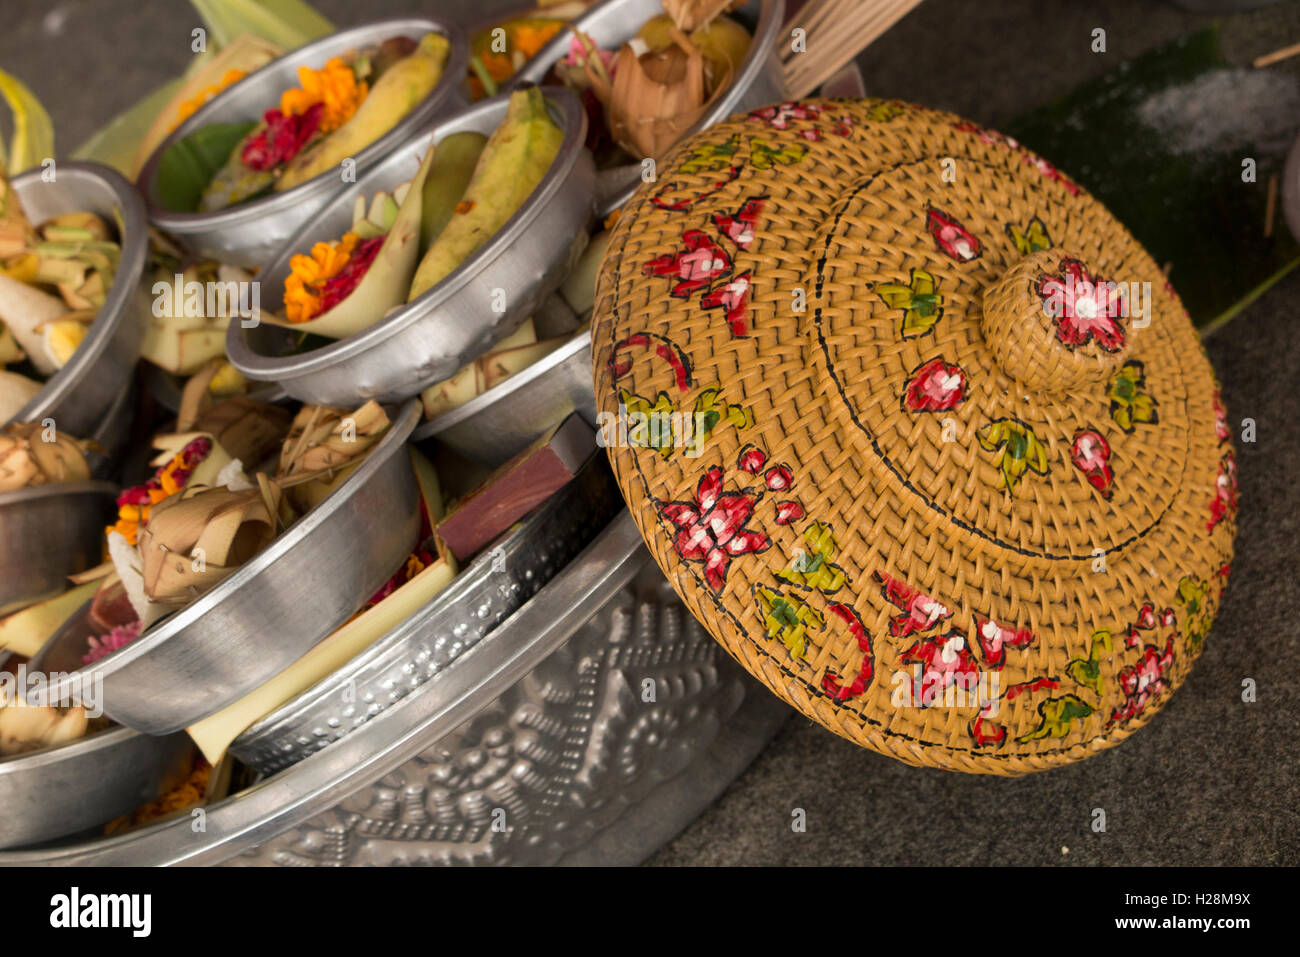 Indonesia, Bali, Batur, Pura Ulun Danu Batur, Kuningan festival offerings in metal bowl Stock Photo